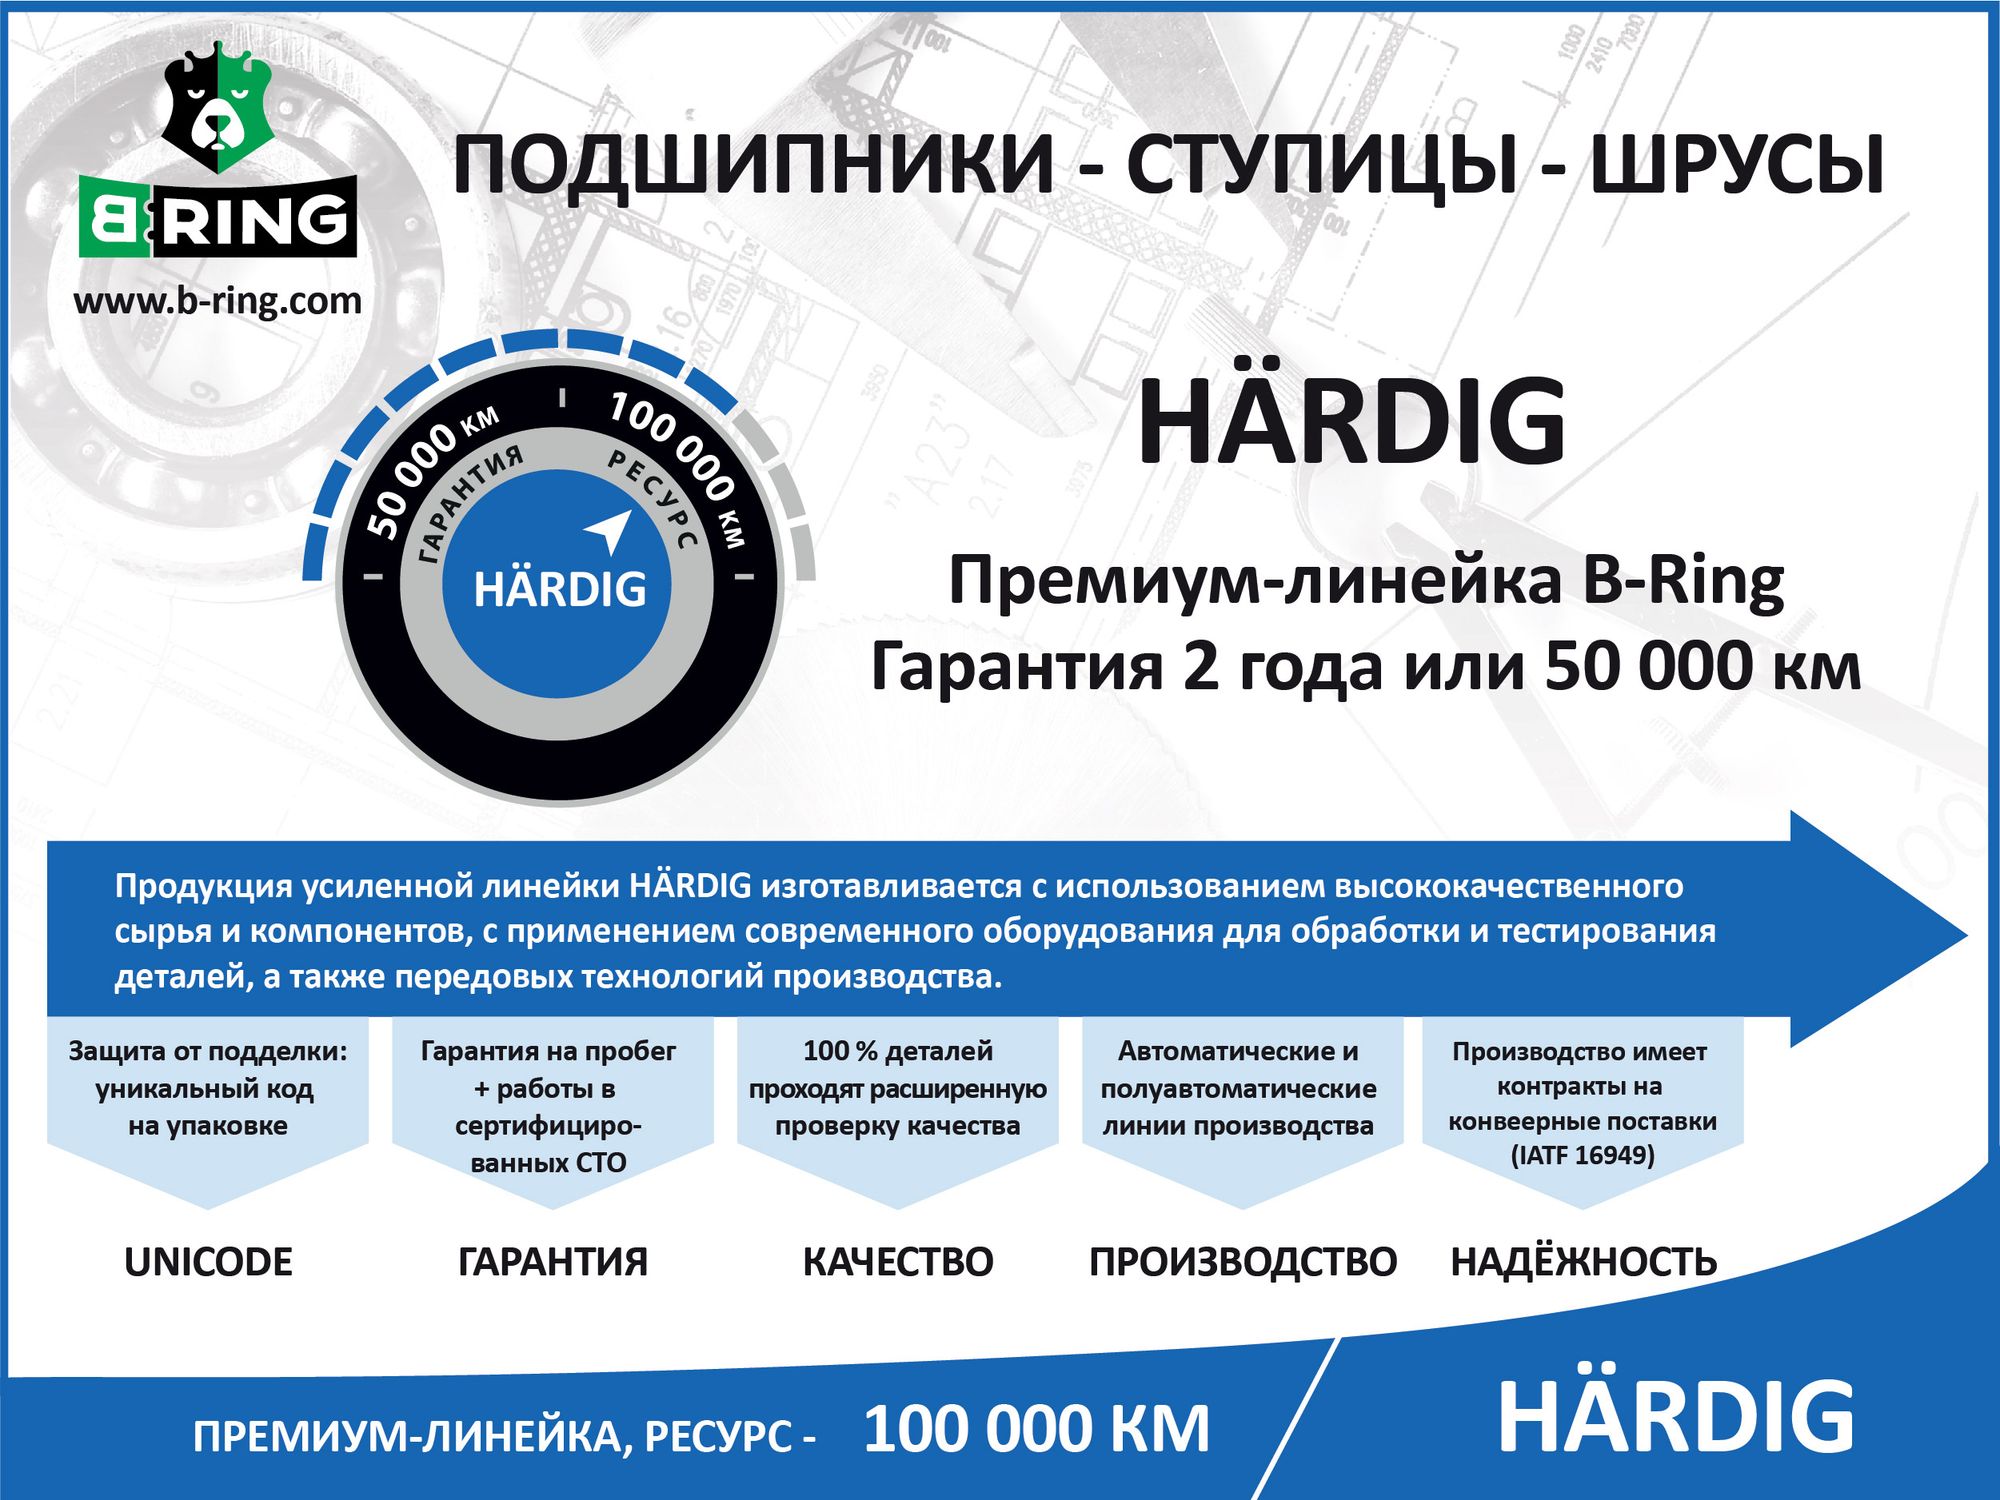 Шрус внутренний HARDIG (ресурс 100 000 км) KIA Sportage (04-)  H hbic1821 B-Ring